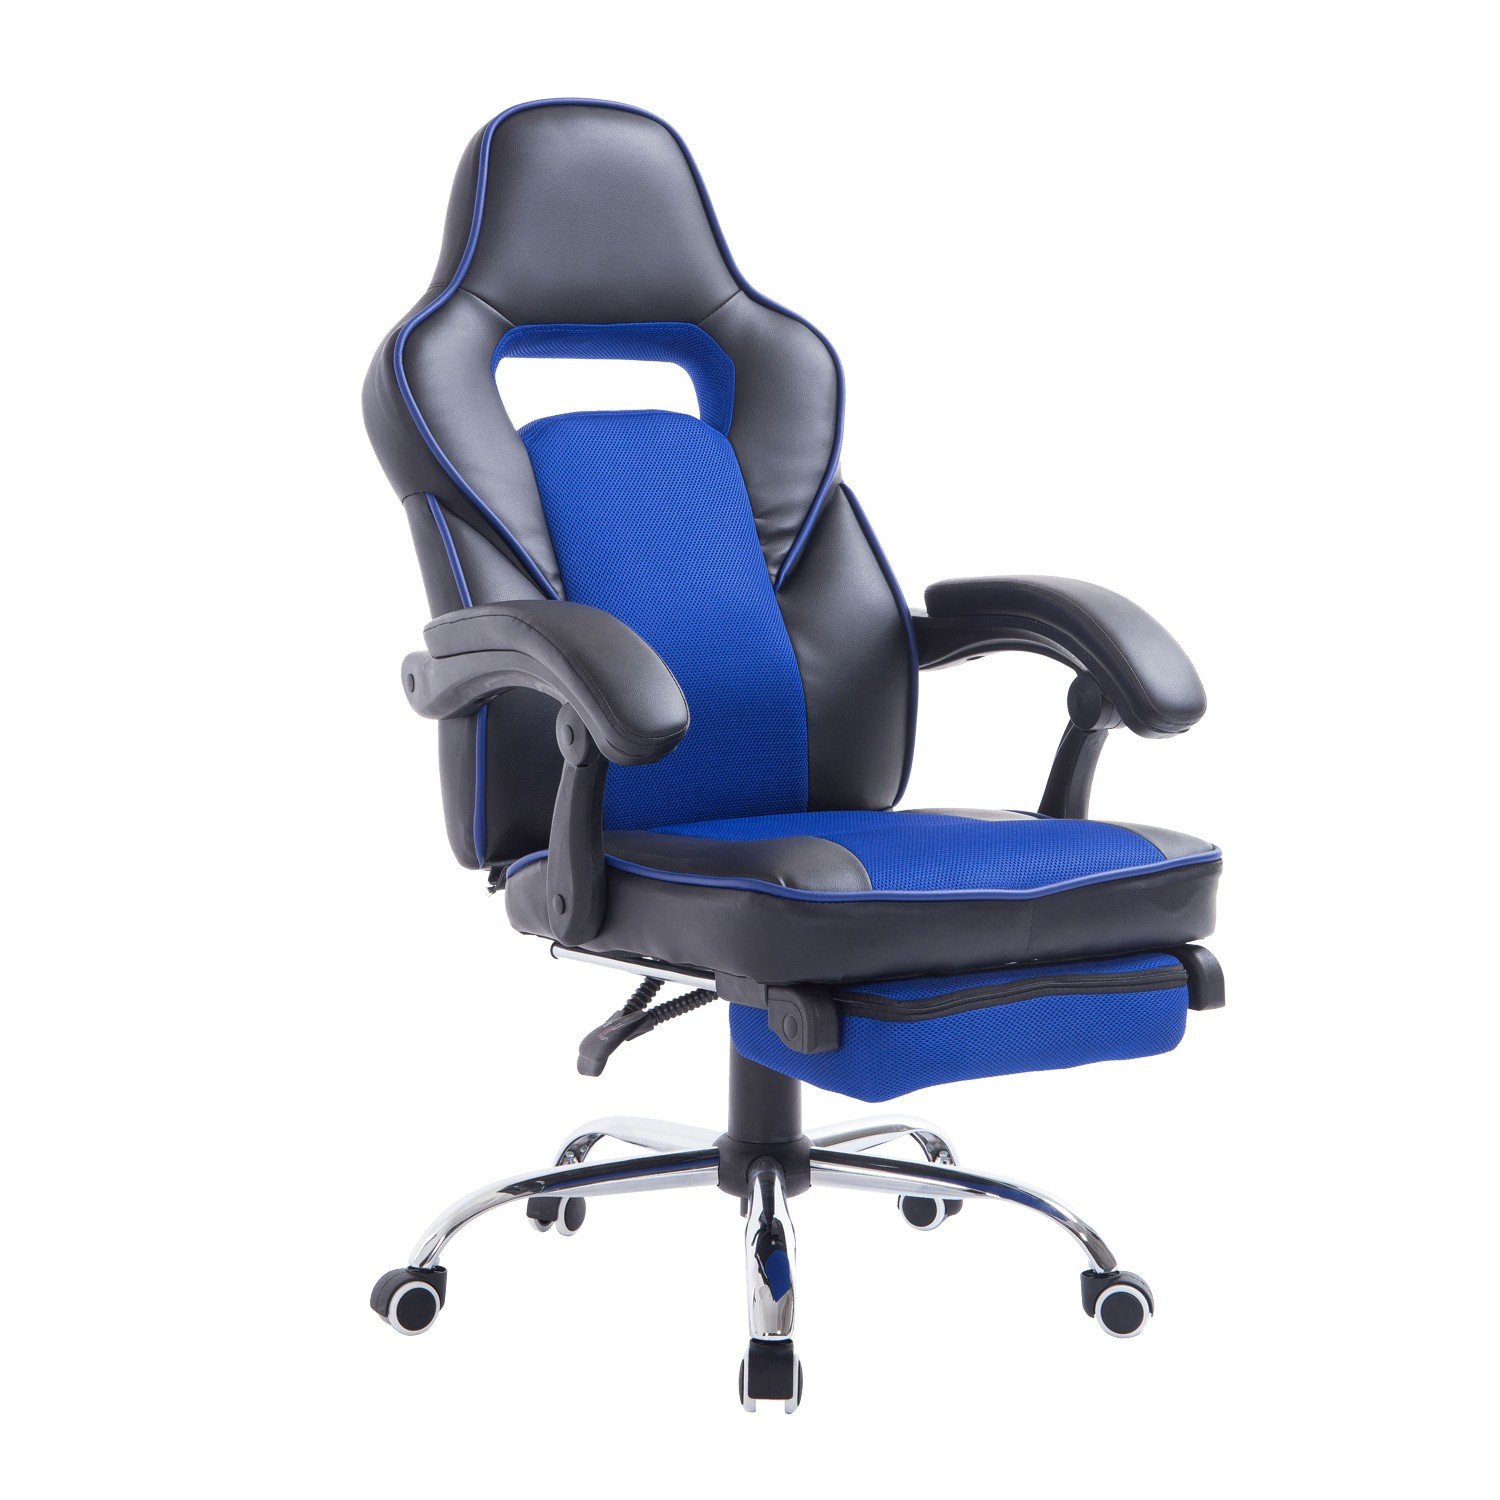 Race Car Style Office Chair 921 028 F 